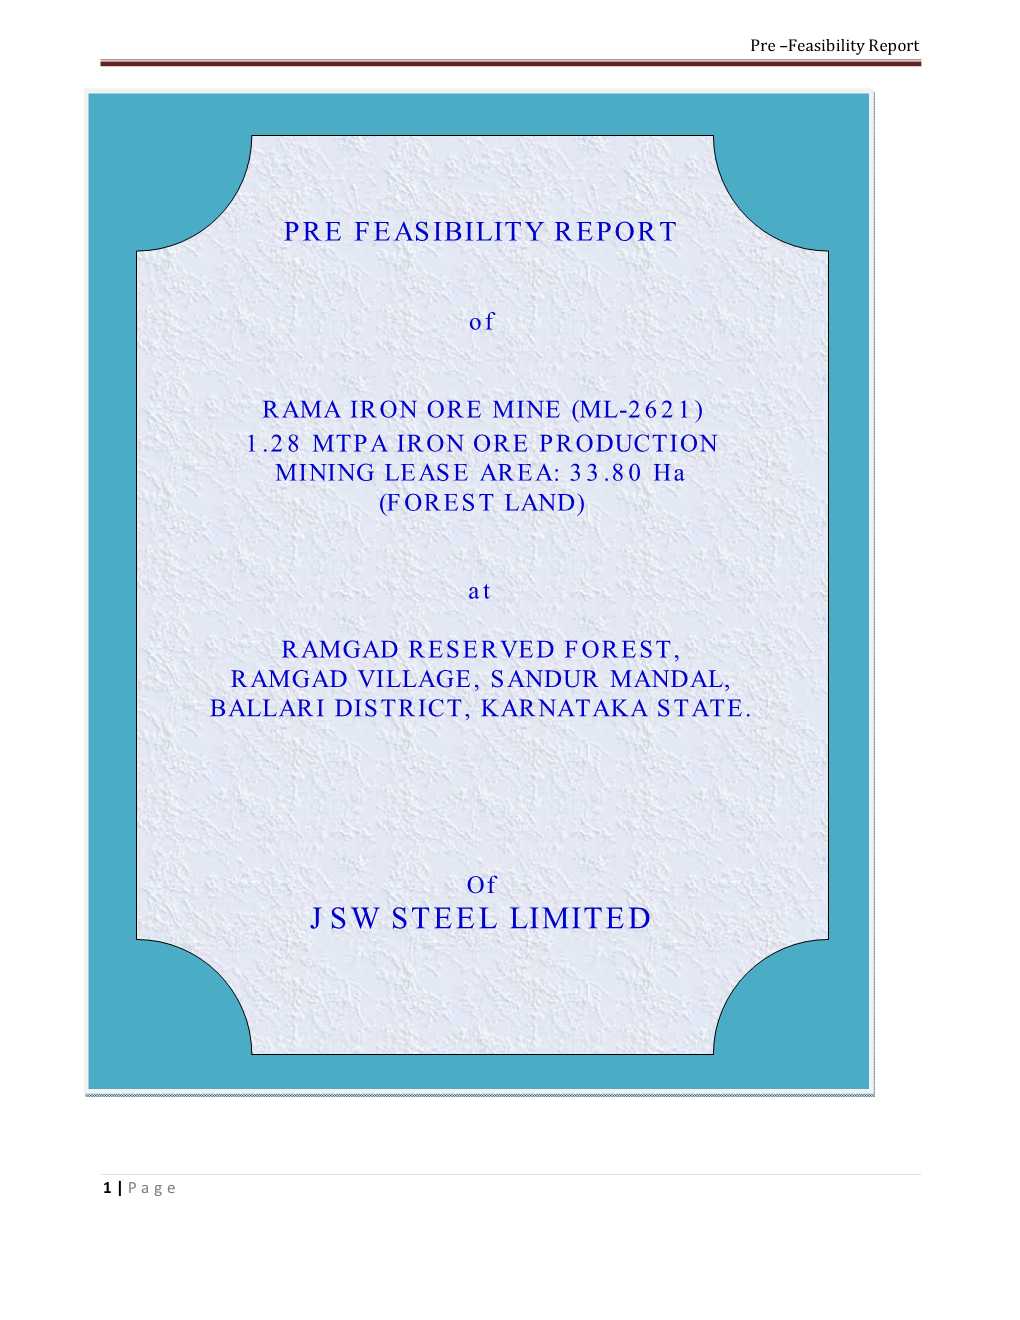 Jsw Steel Limited